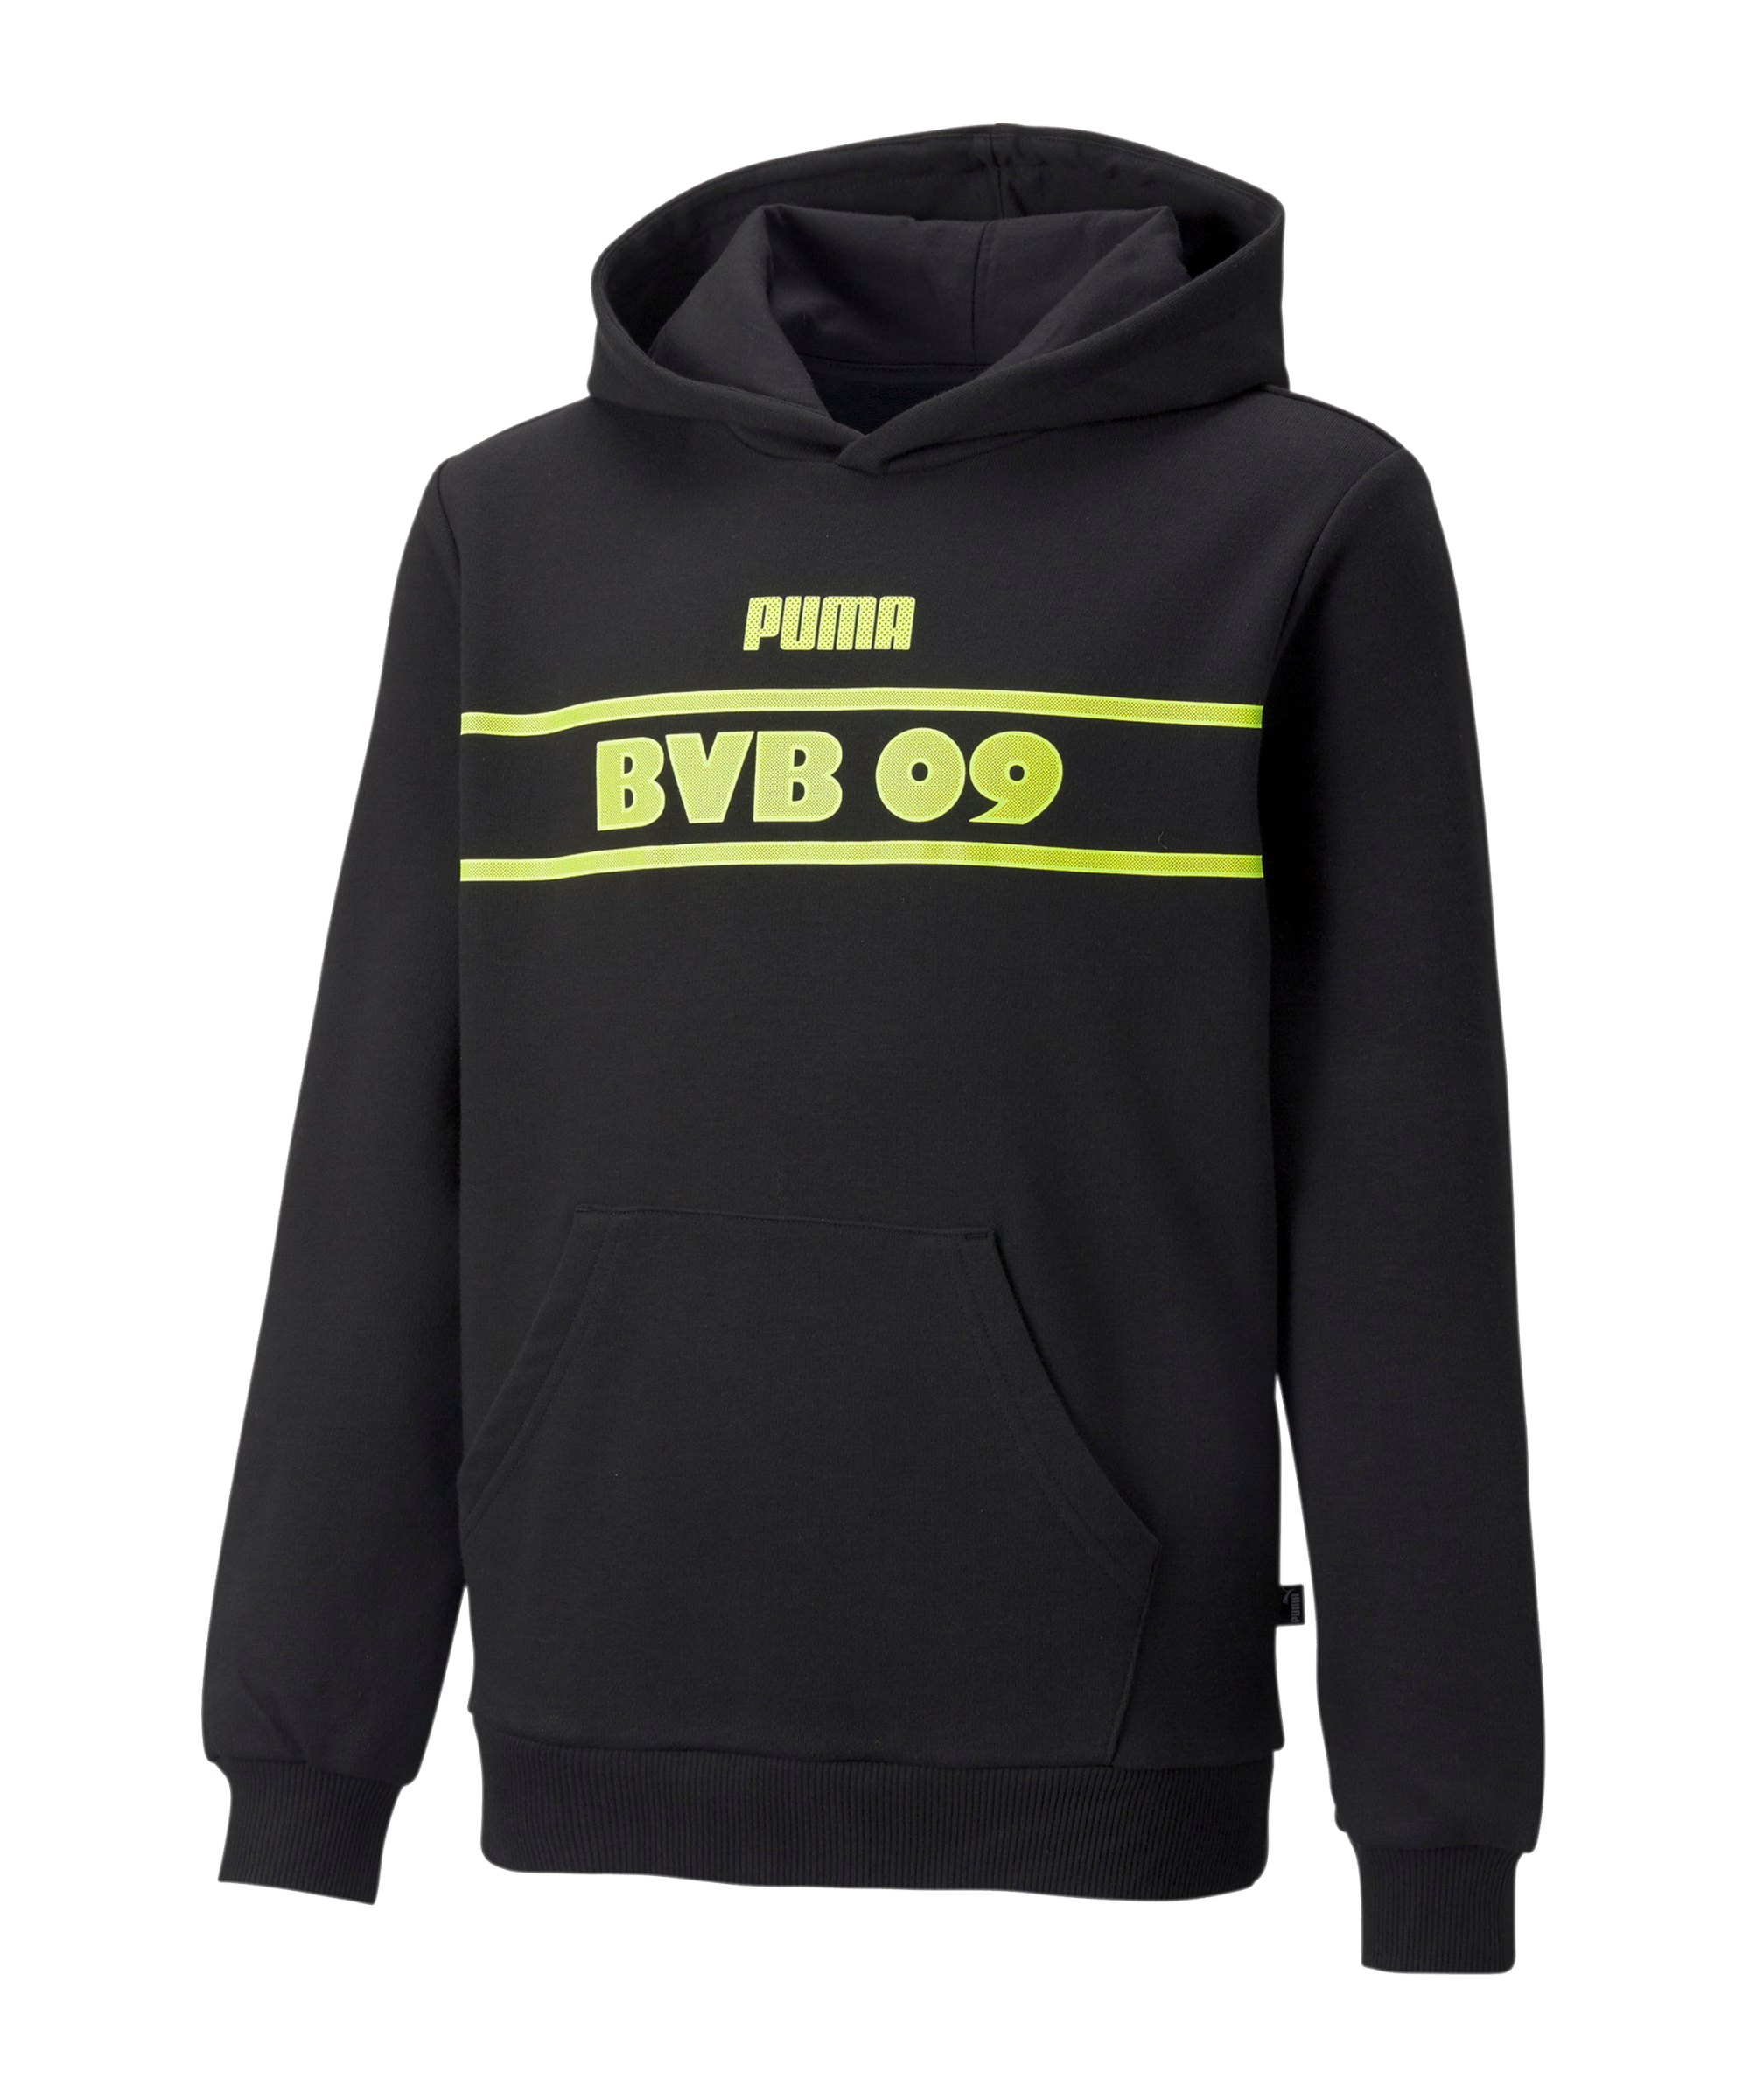 PUMA BVB Dortmund FtblLegacy Hoody Kids Schwarz F05 - schwarz